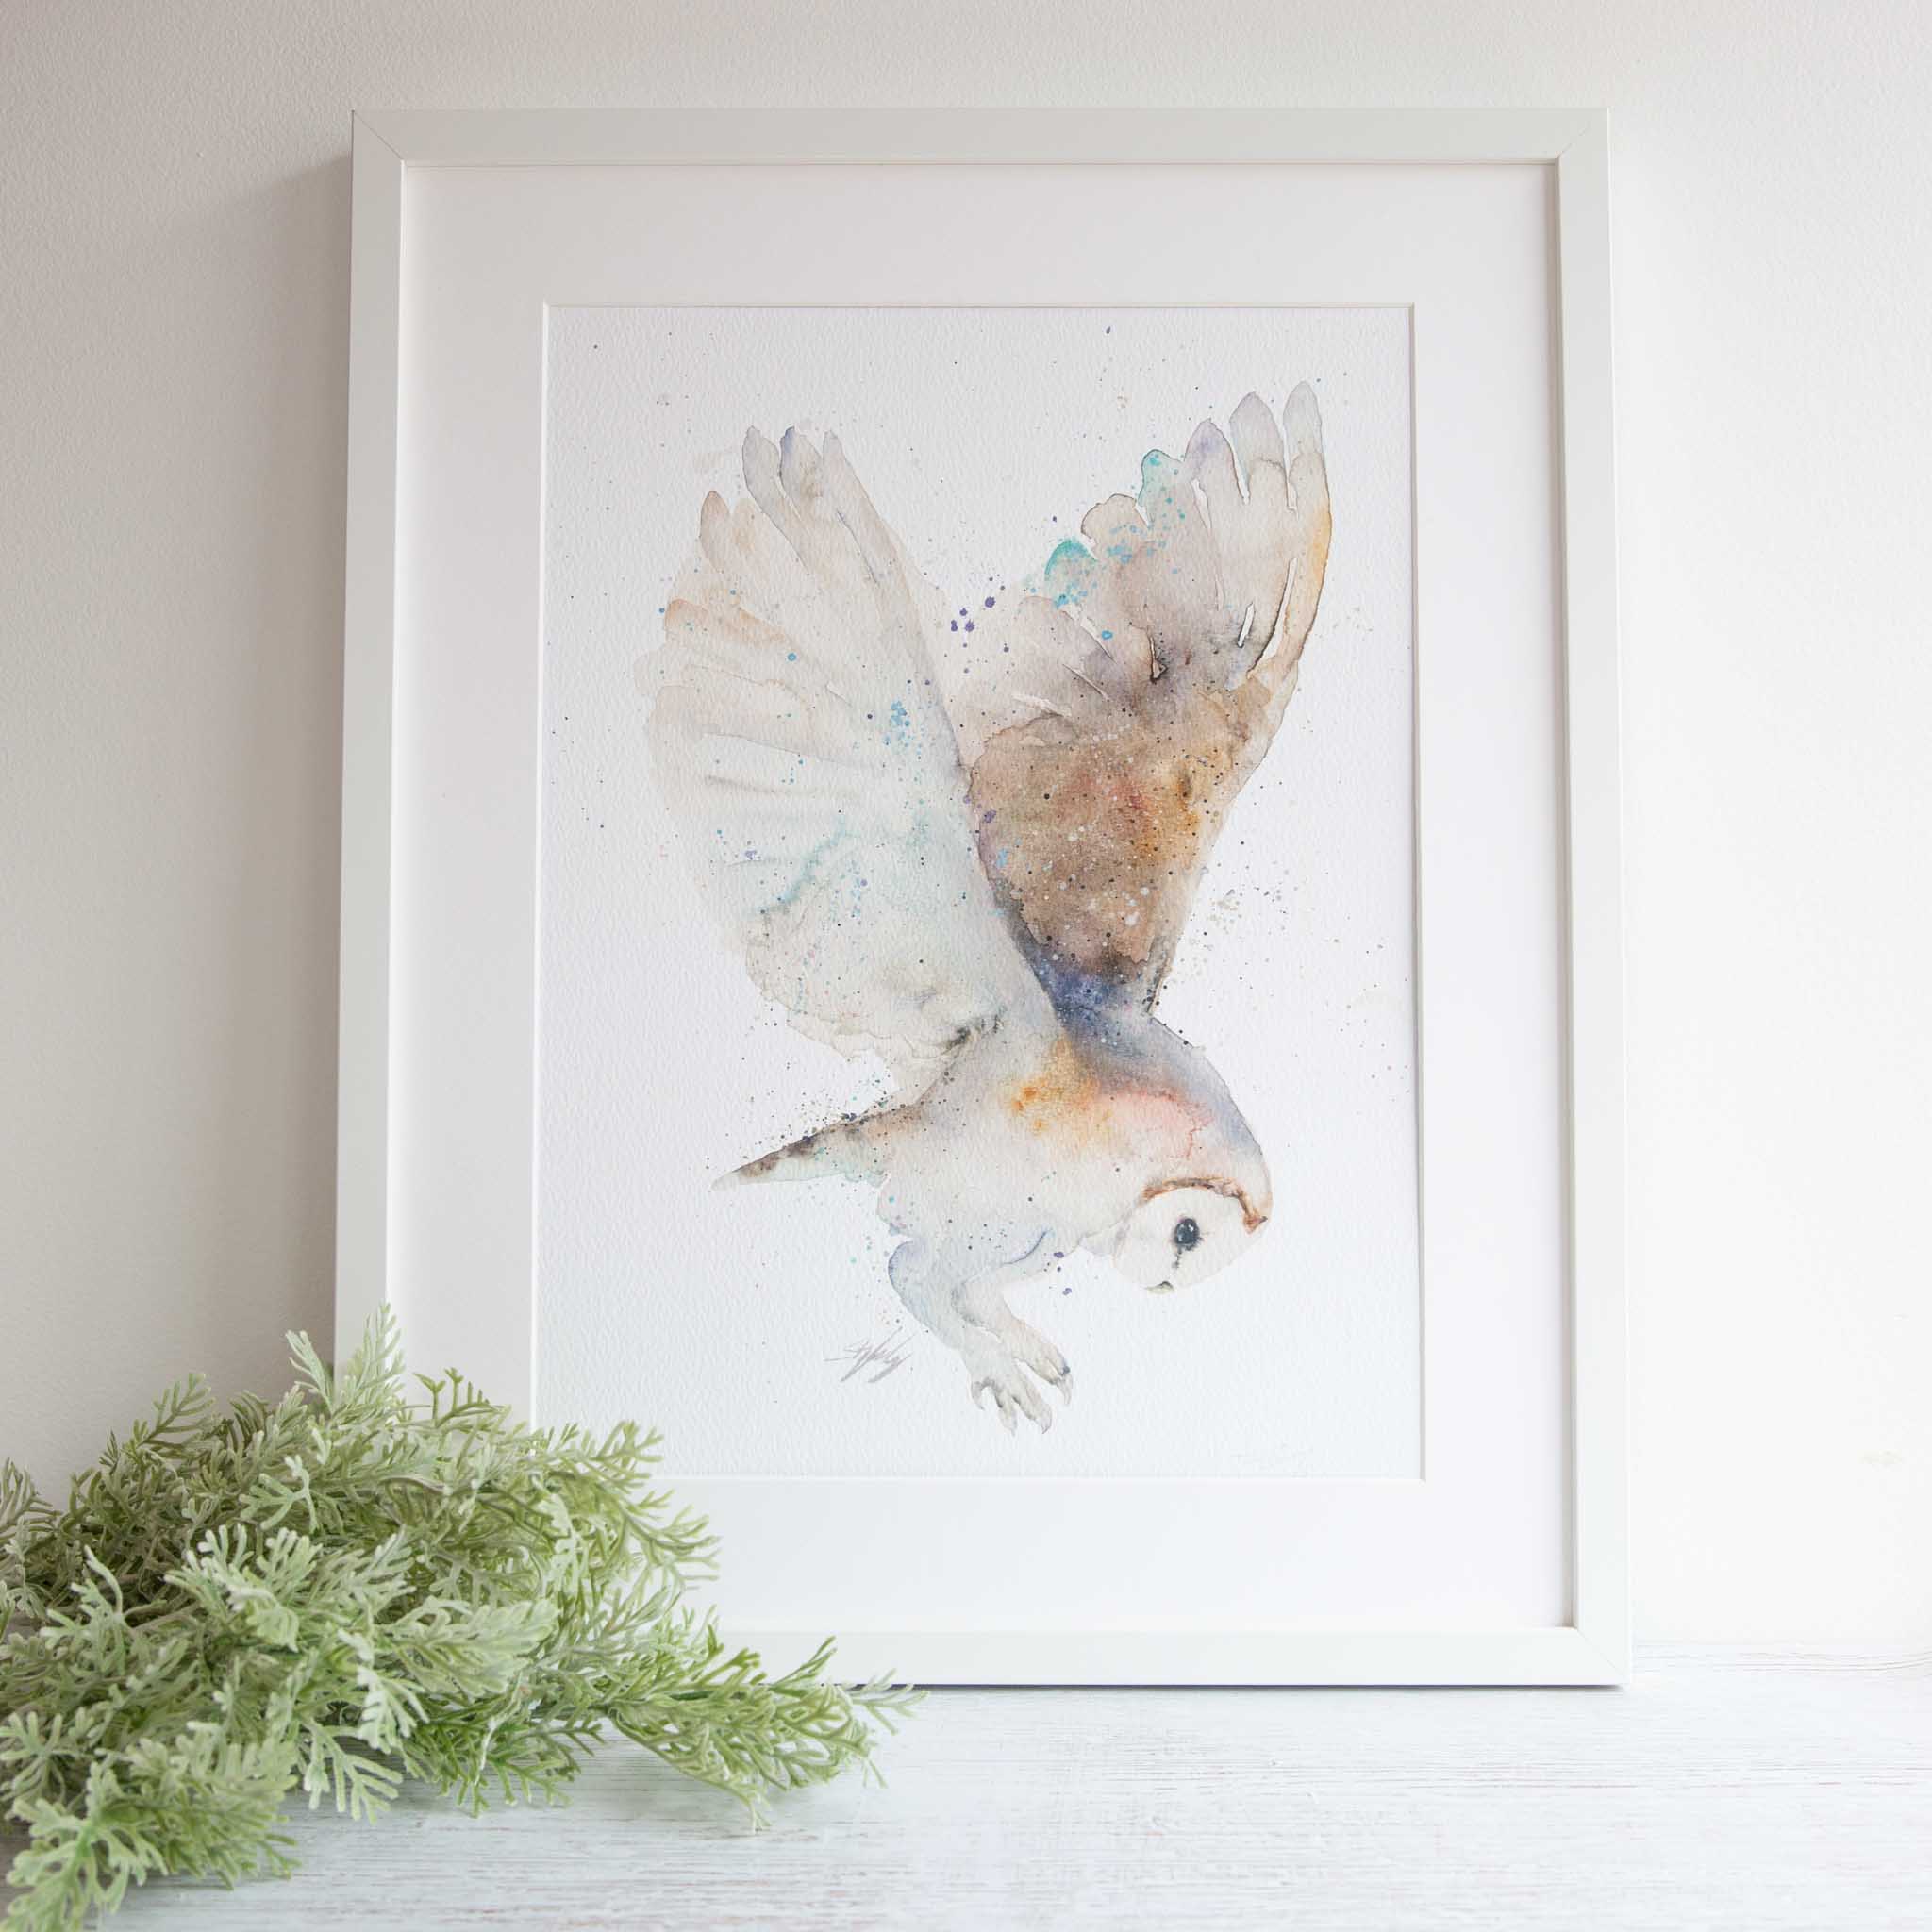 Framed watercolour owl artwork